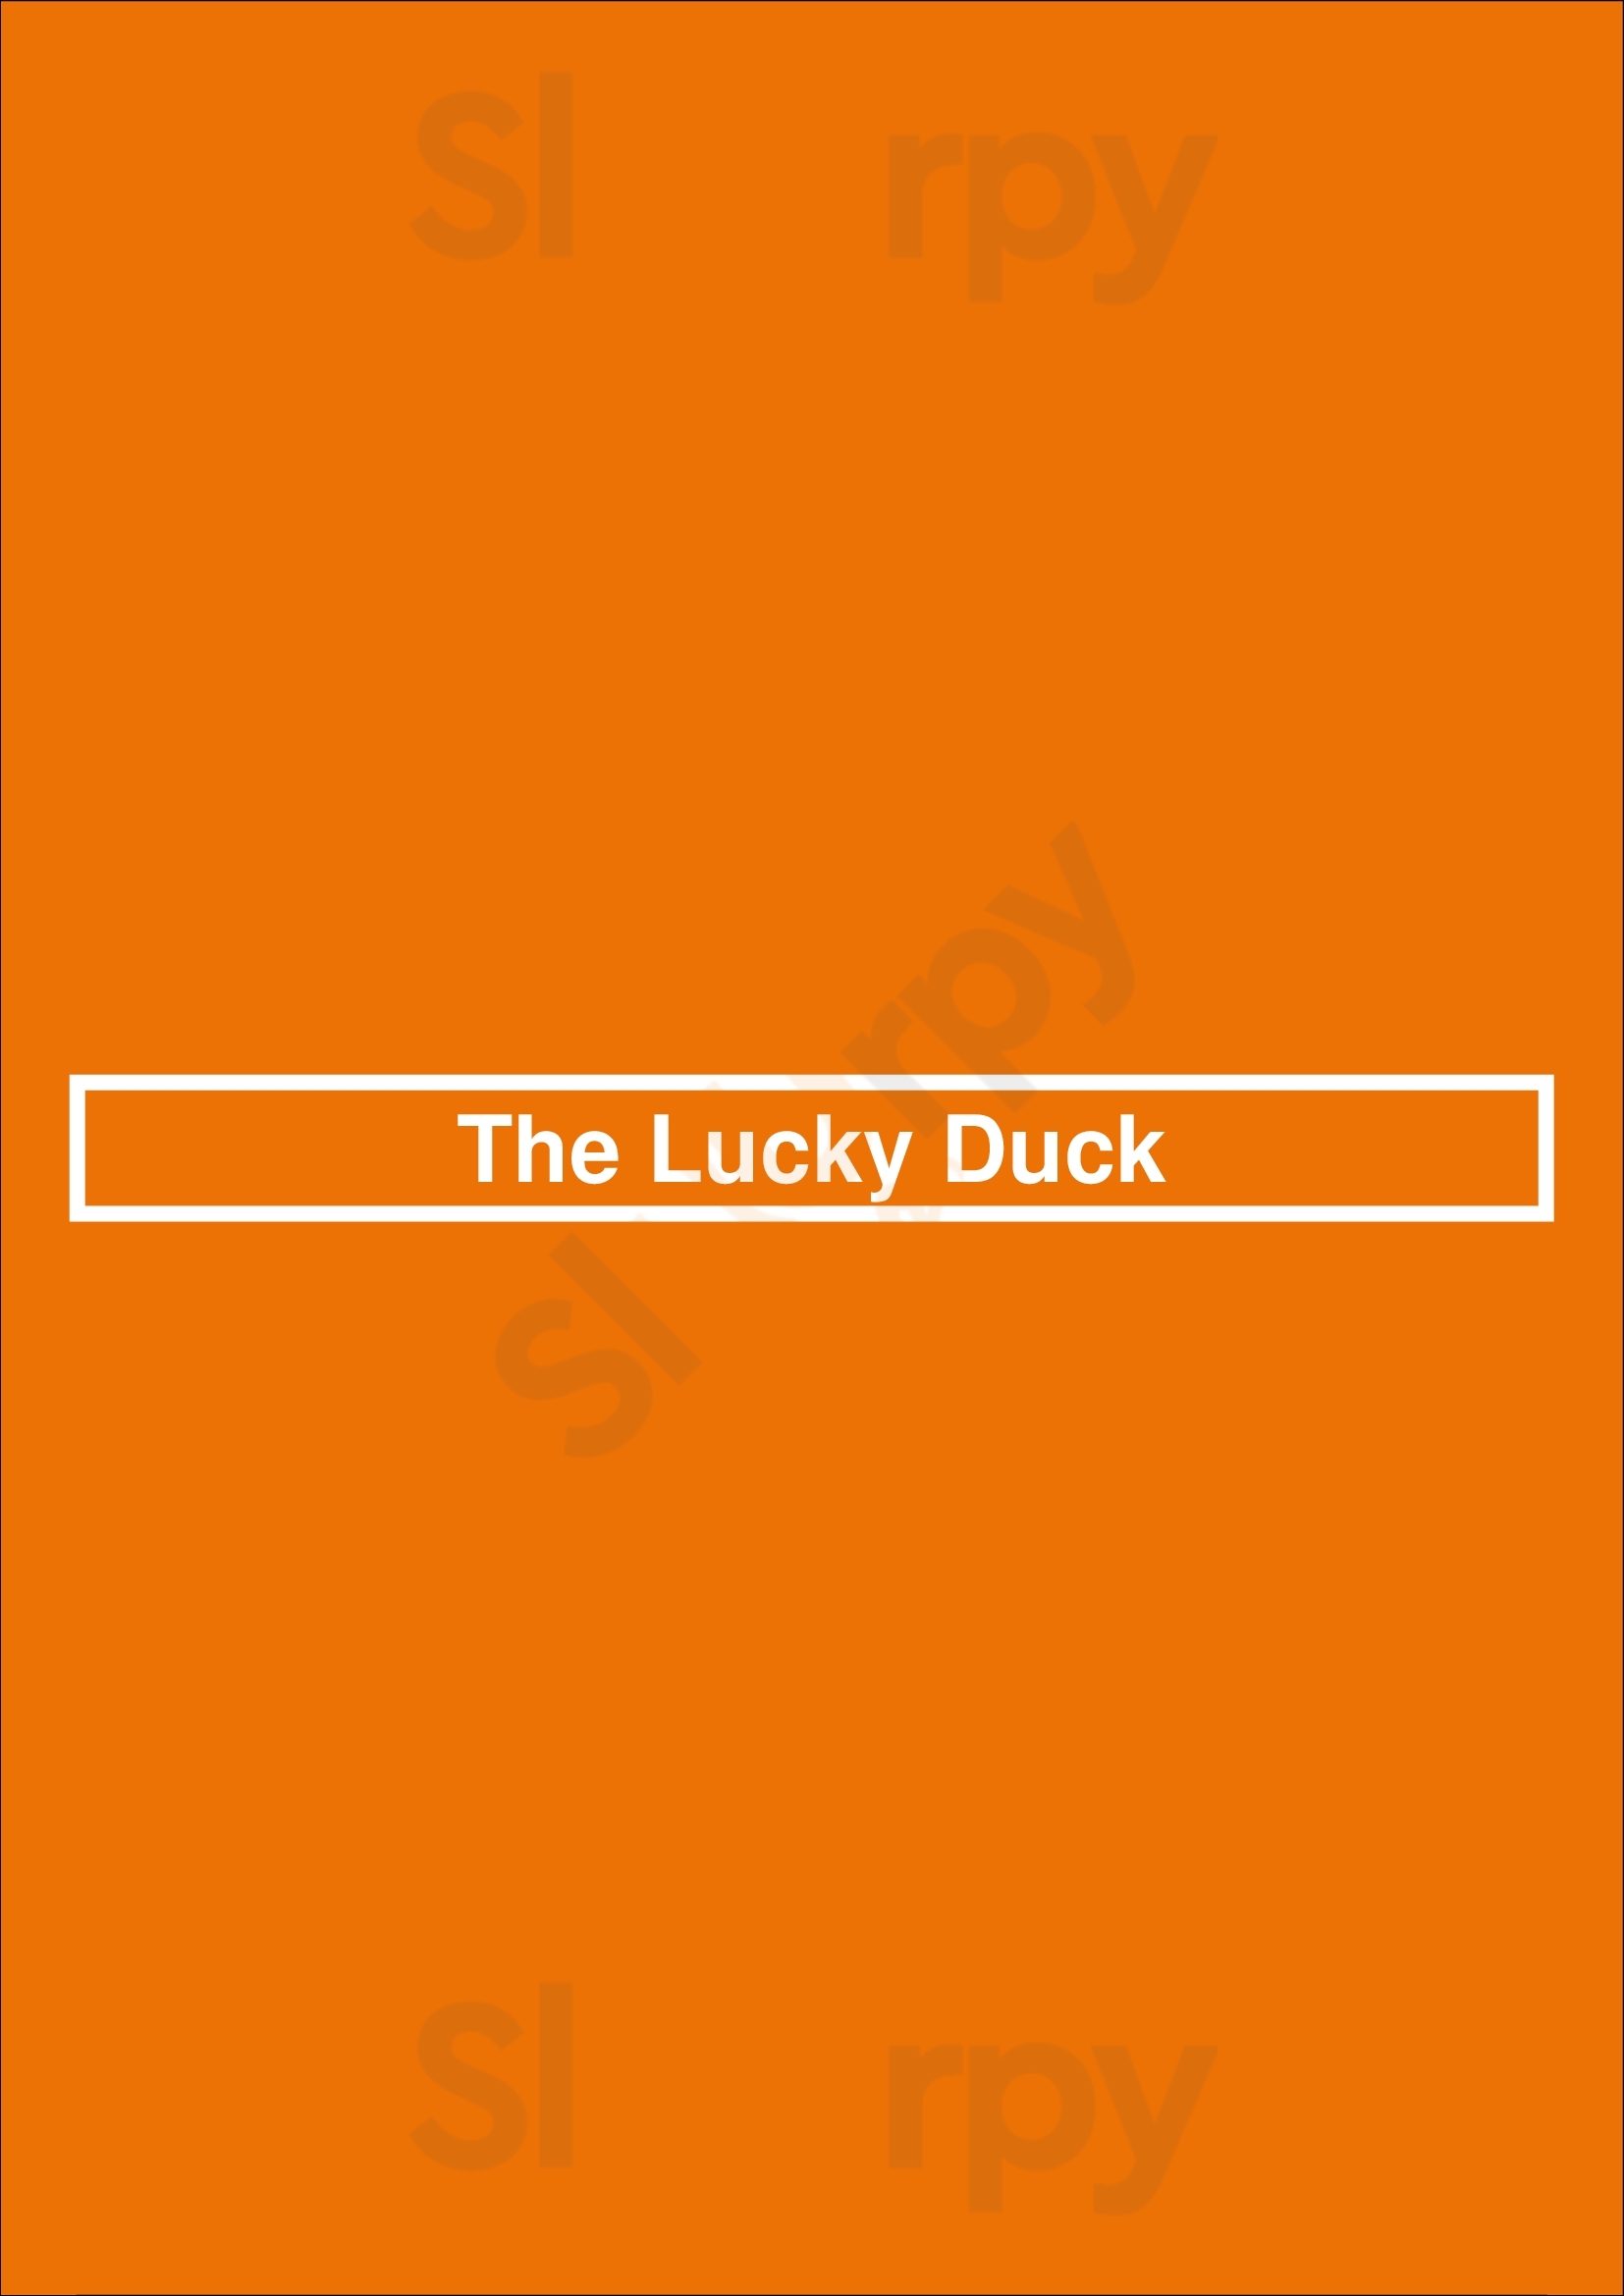 The Lucky Duck Dublin Menu - 1